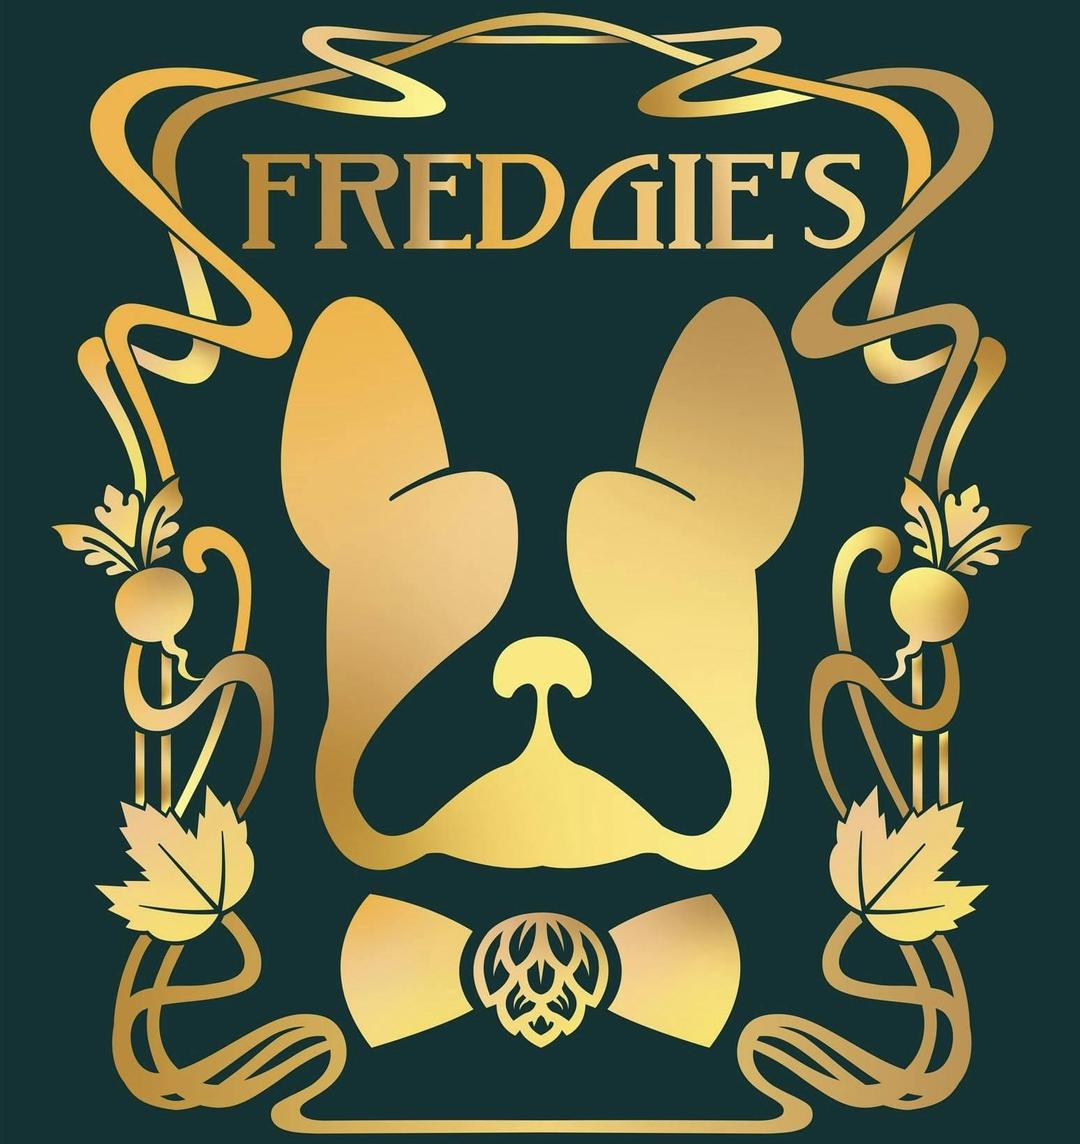 Fredgie’s avatar